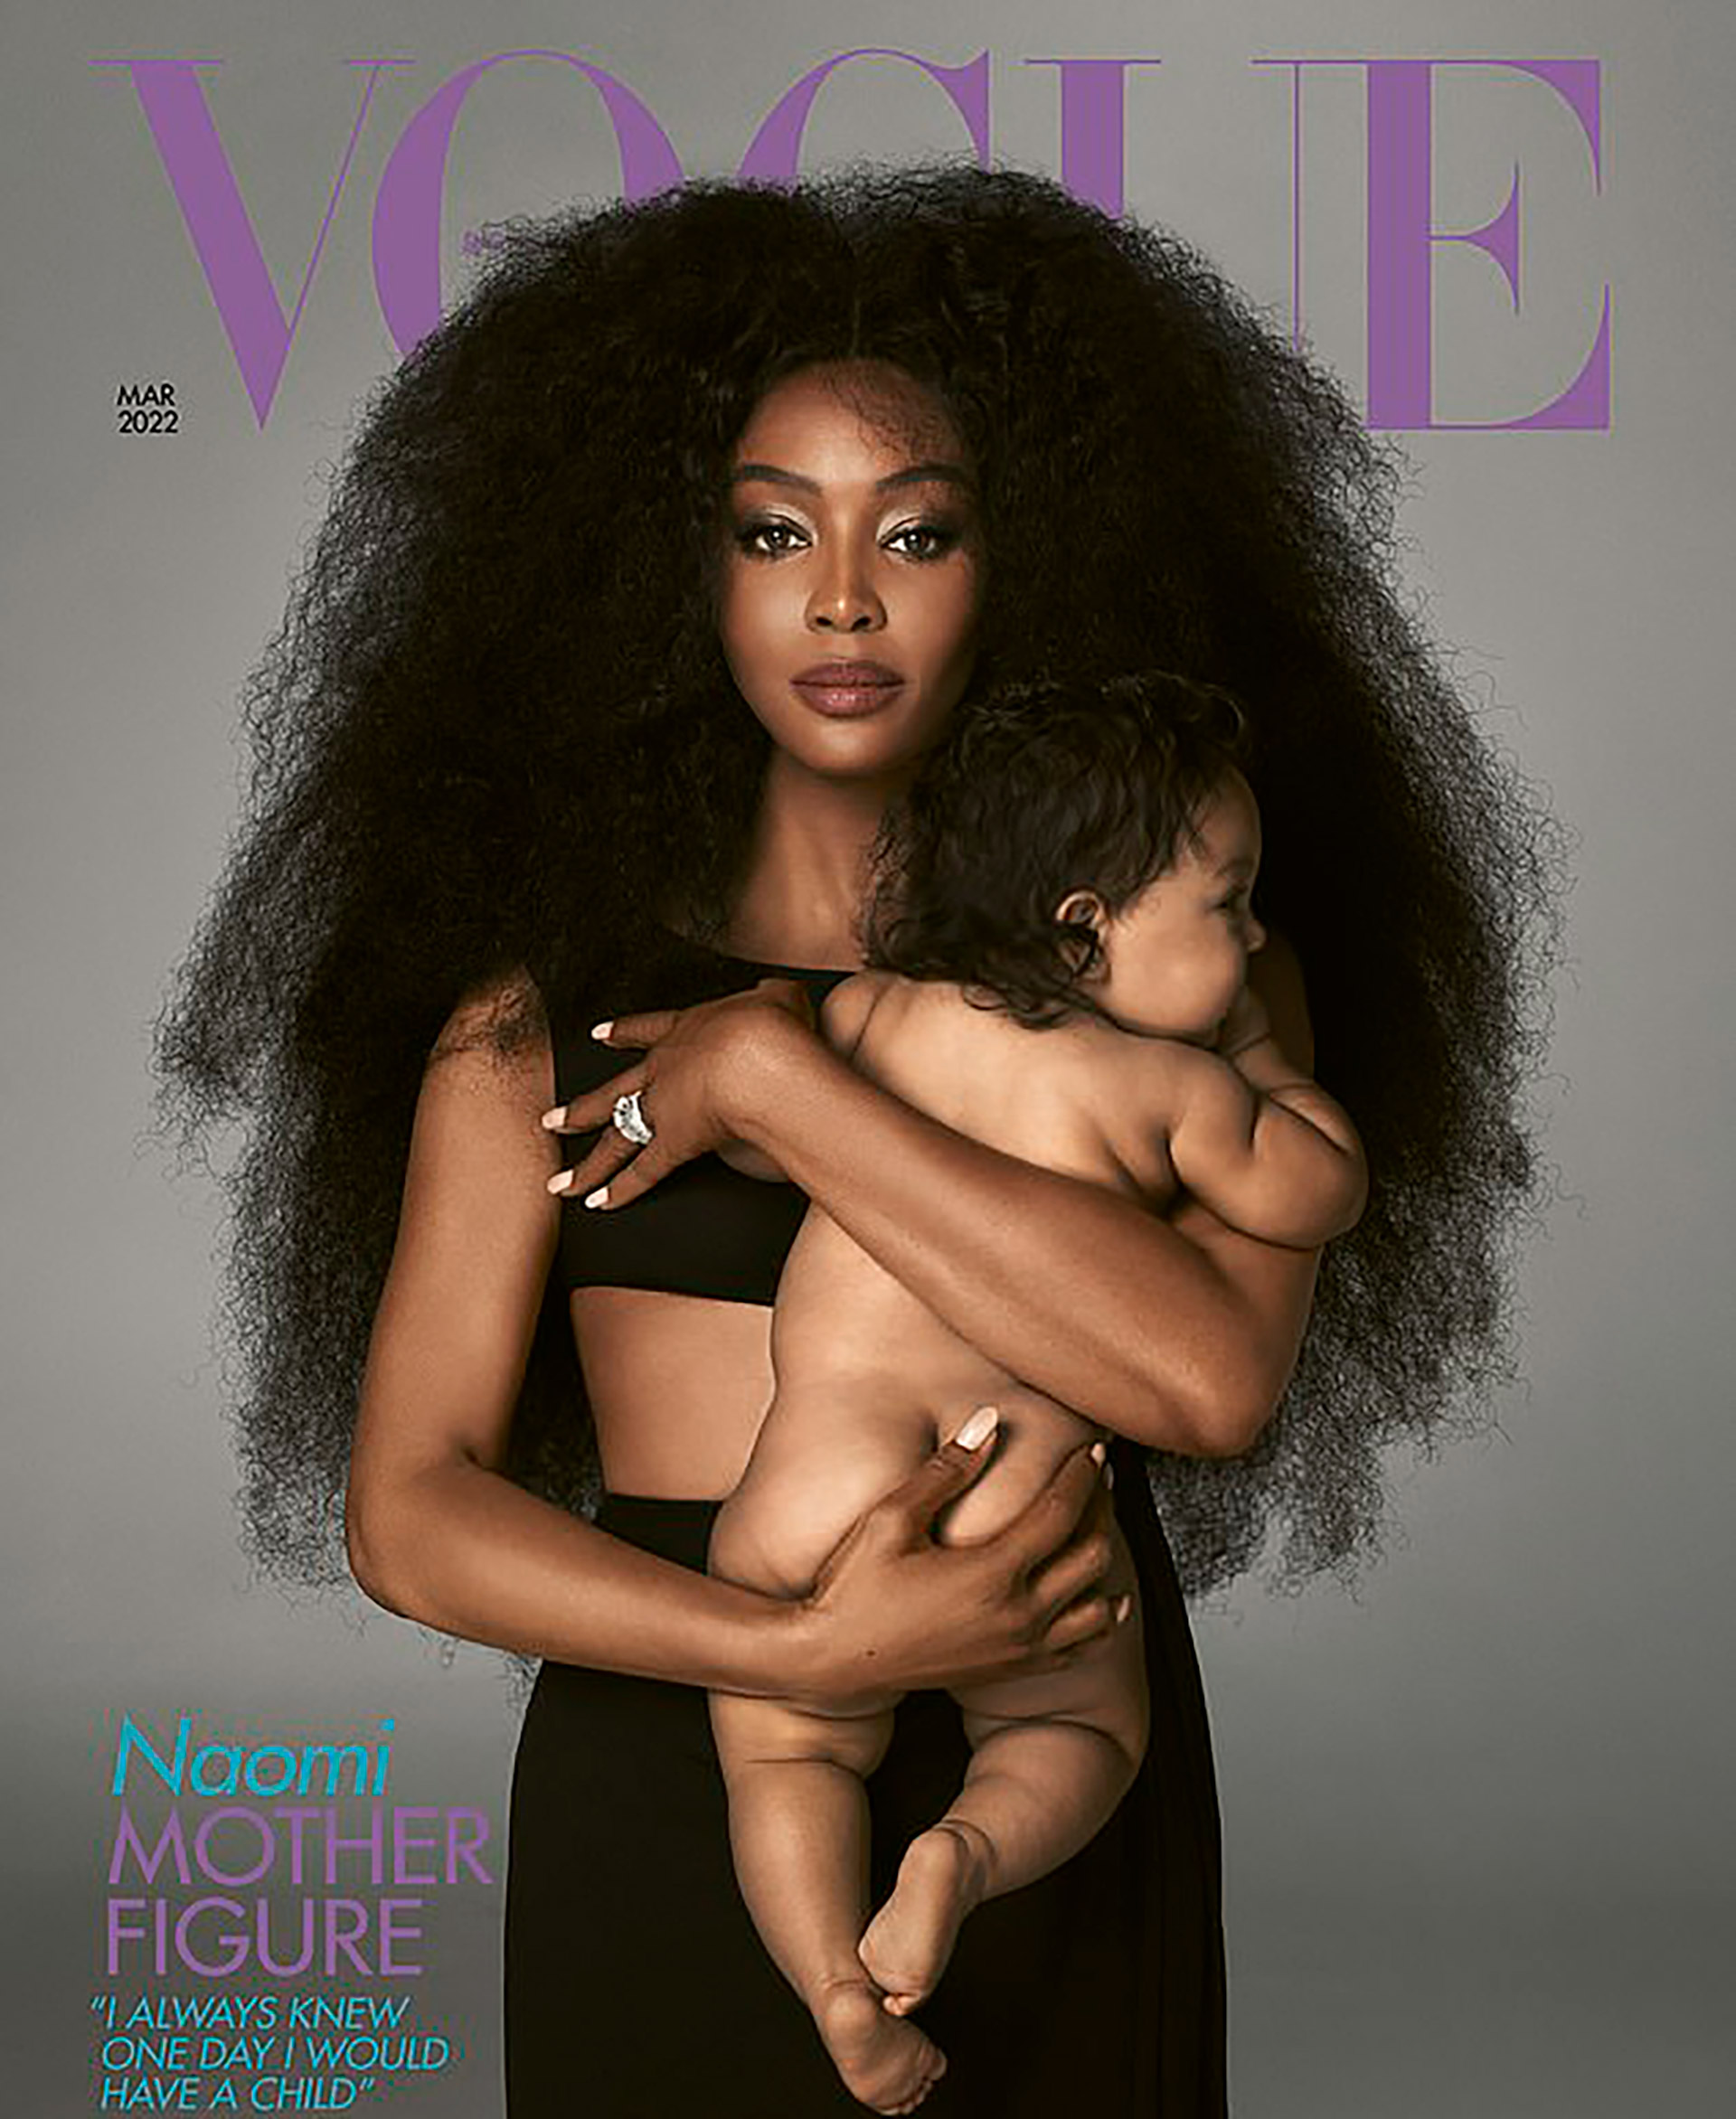 Naomi Campbell, de 51 años, reveló el rostro de su hija por primera vez y habló sobre su viaje secreto hacia la maternidad